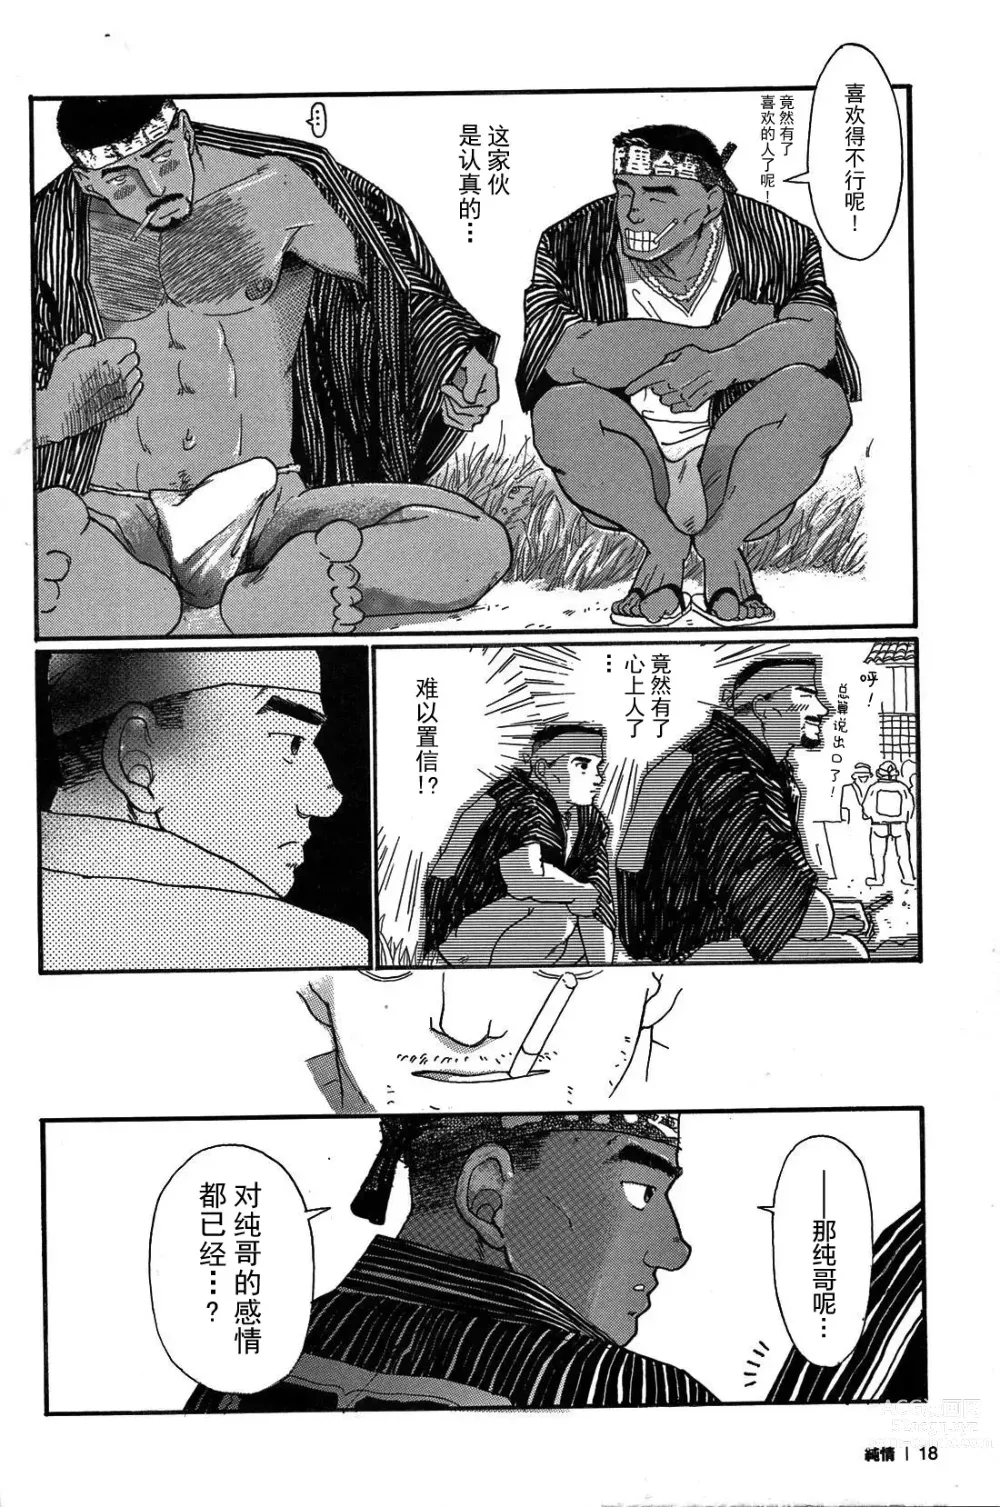 Page 17 of manga 纯情-第一章-纯情!!